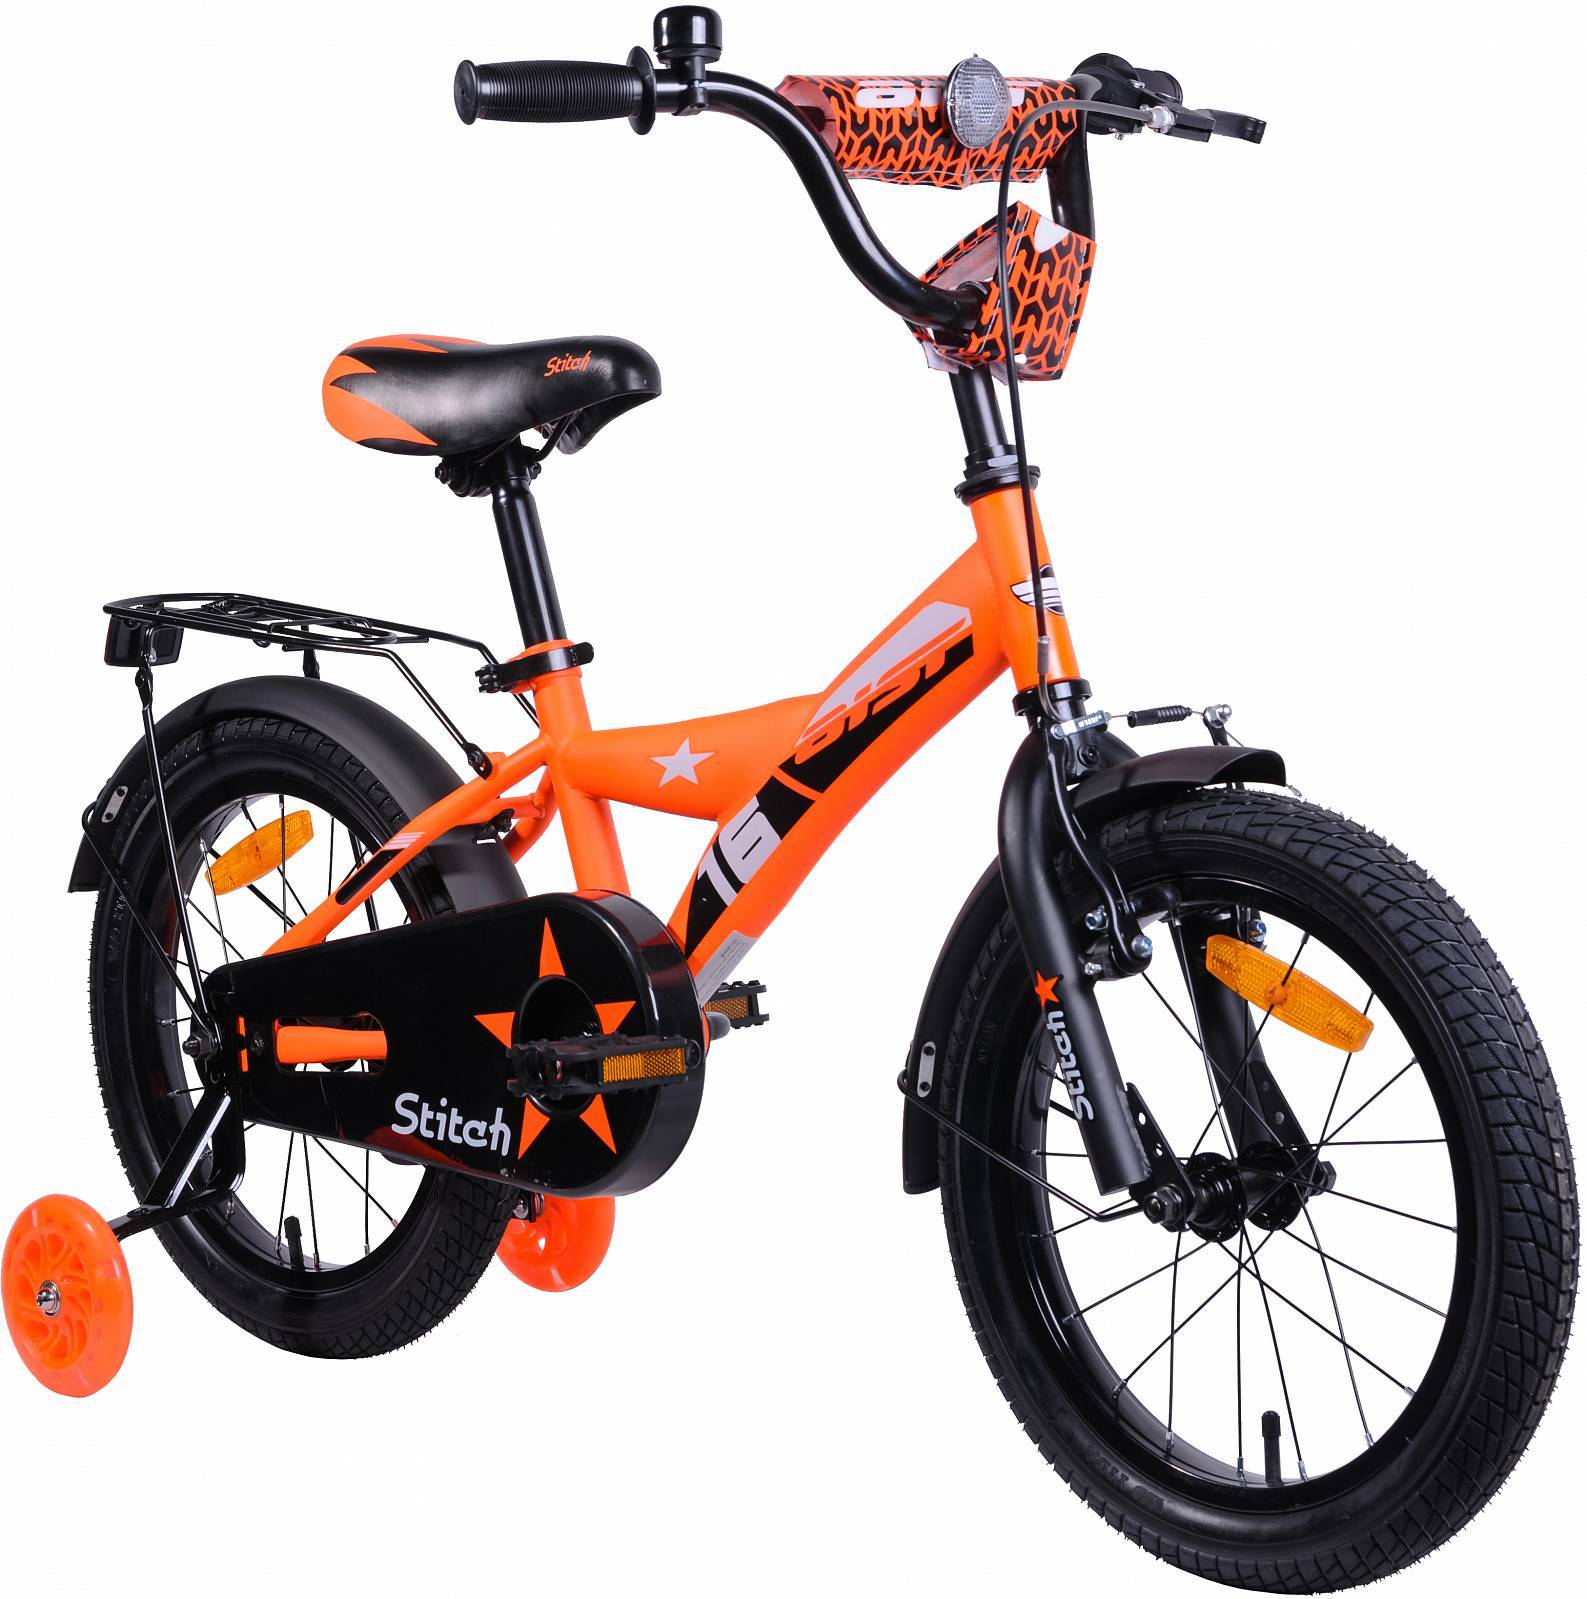 Велосипед STITCH 16 оранжевый 2019